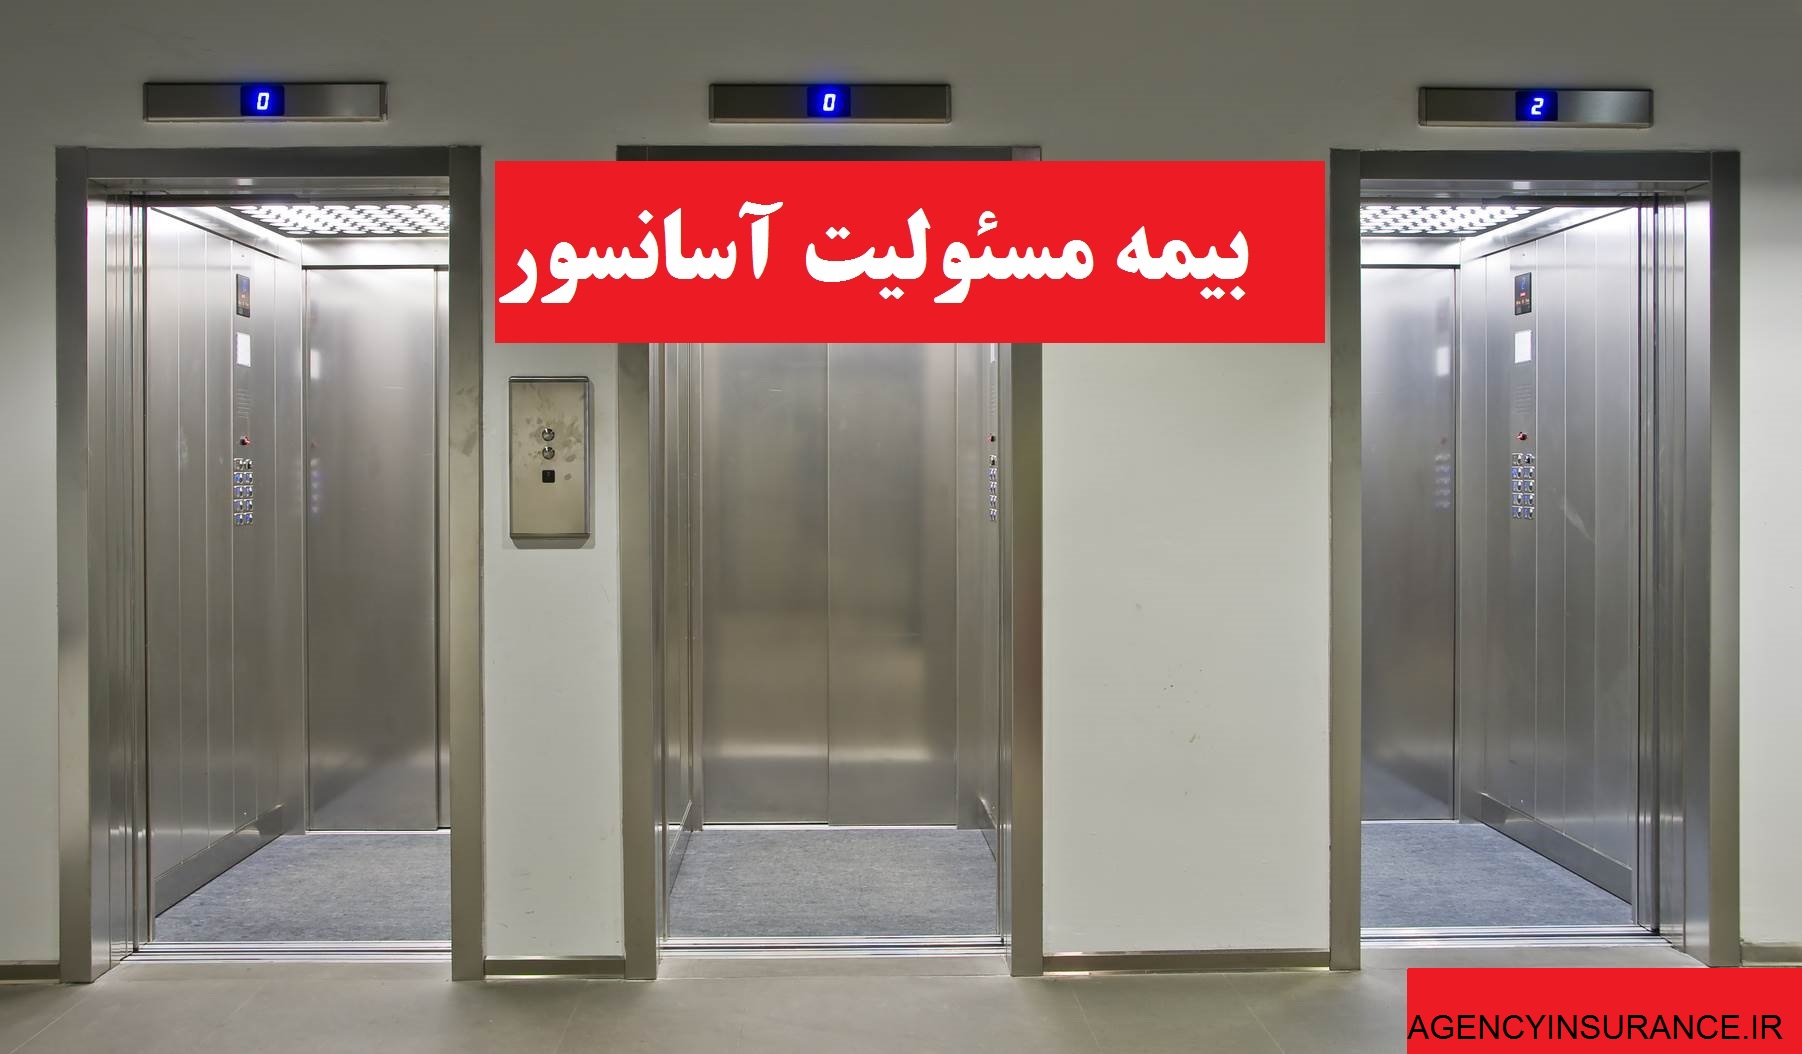 بیمه آسانسور بیمه پاسارگاد در بهارستان